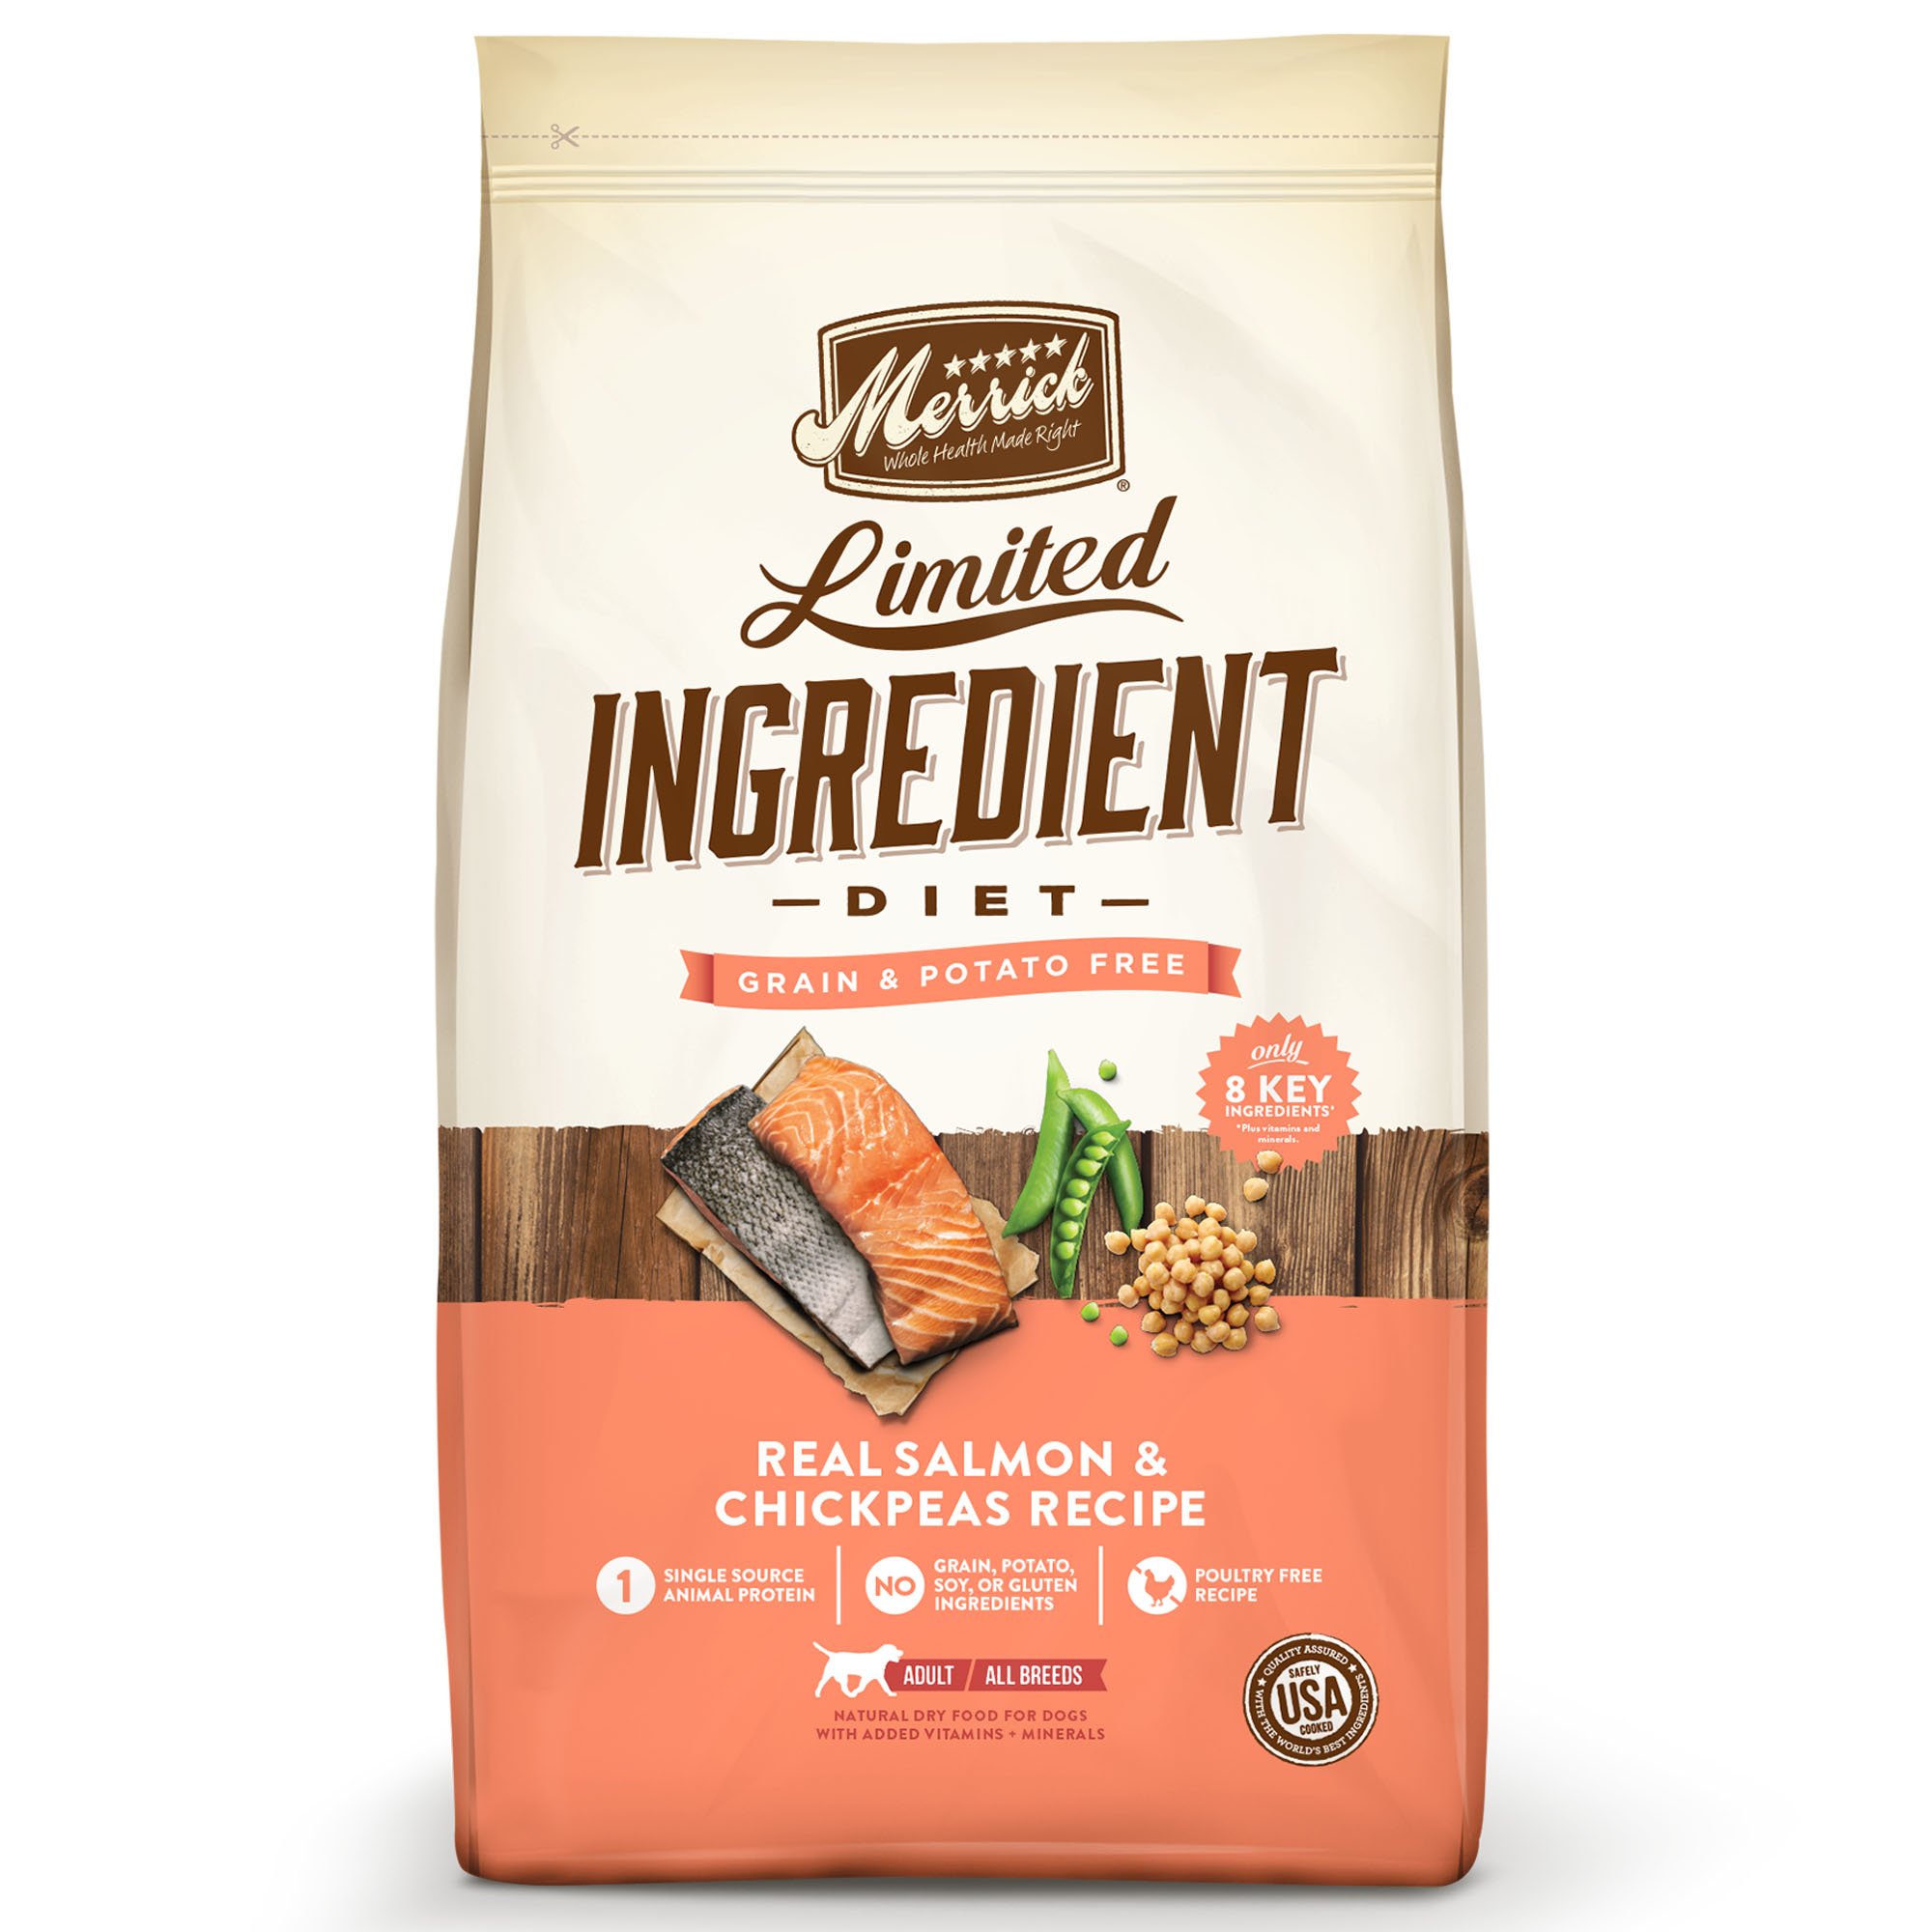 Merrick Limited Ingredient Diet Grain Free Salmon & Sweet